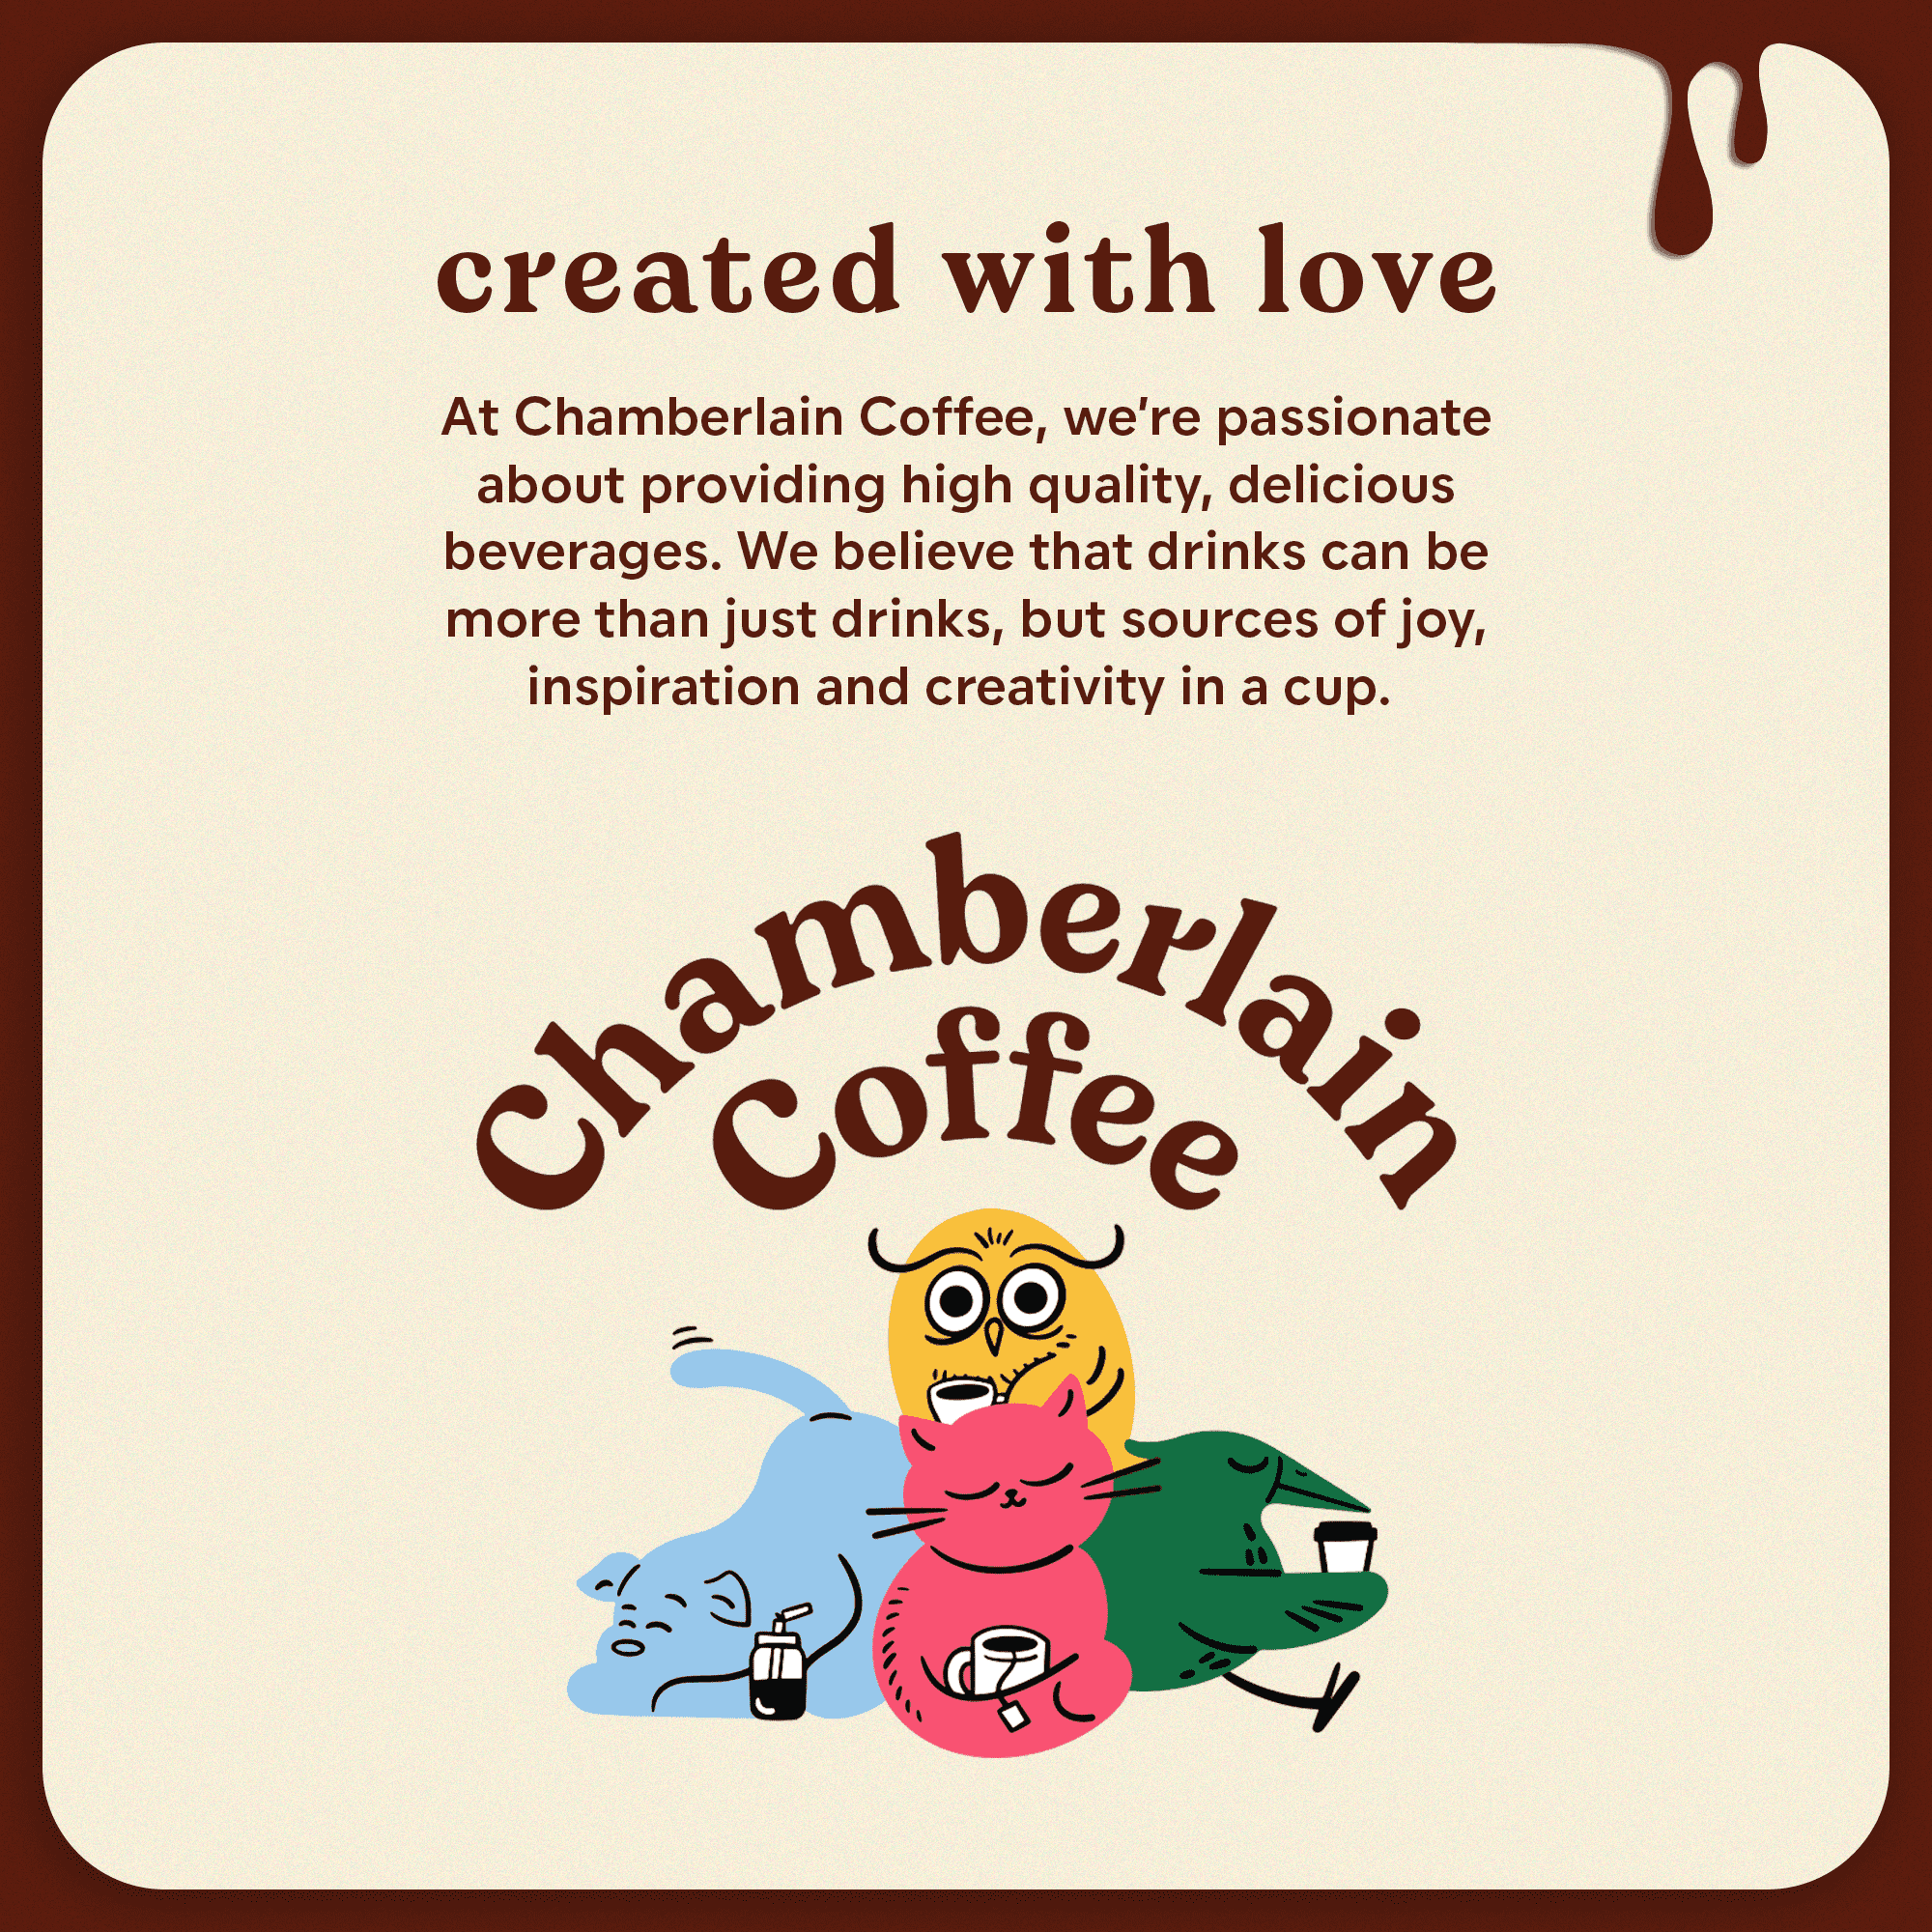 Chamberlain Coffee - Coffee for everyone. #chamberlaincoffee